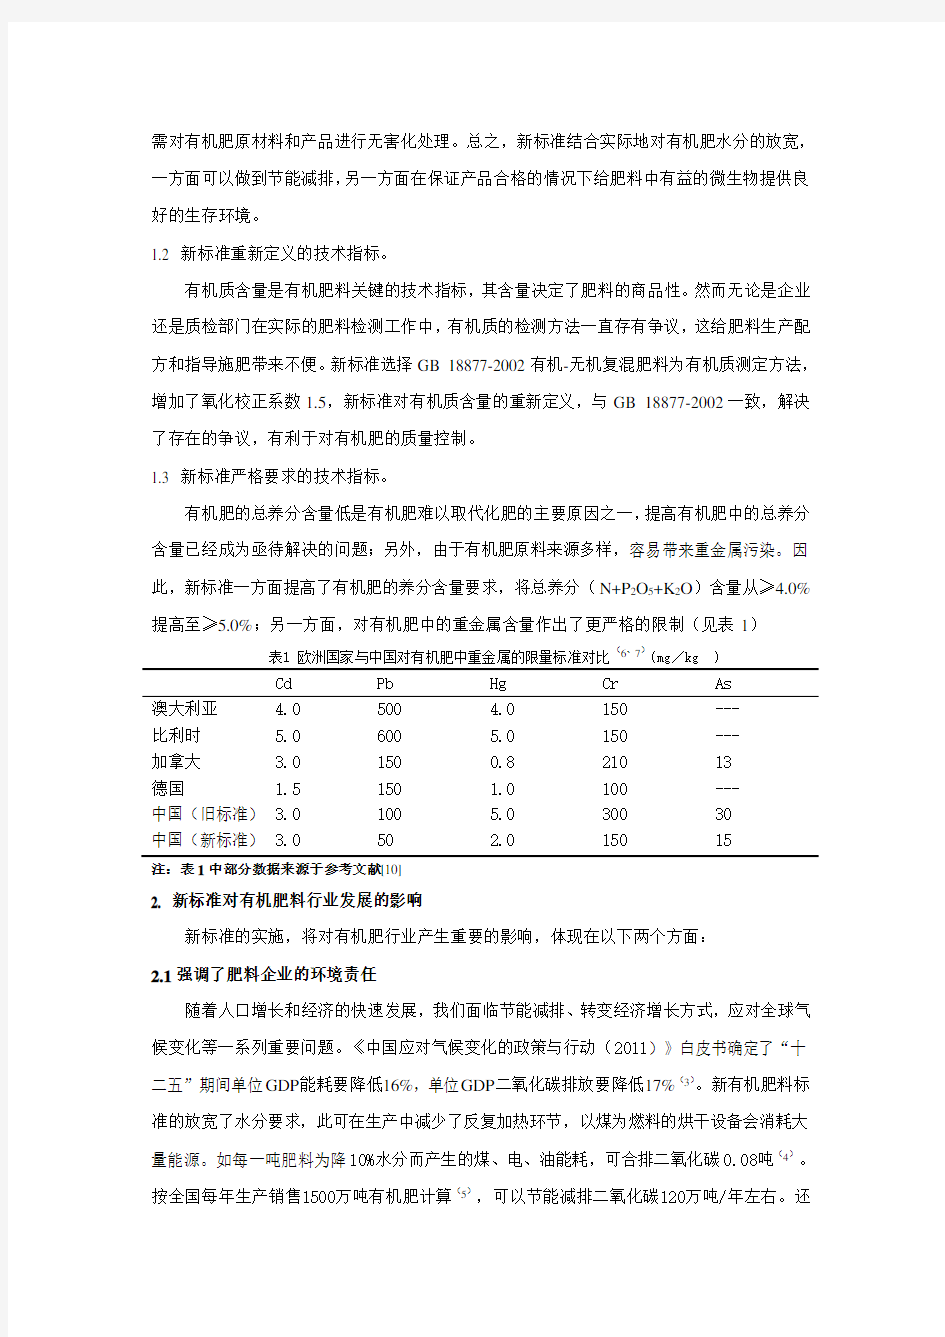 新版有机肥标准(NY525-2012)的解读及思考-王宗抗(2012)